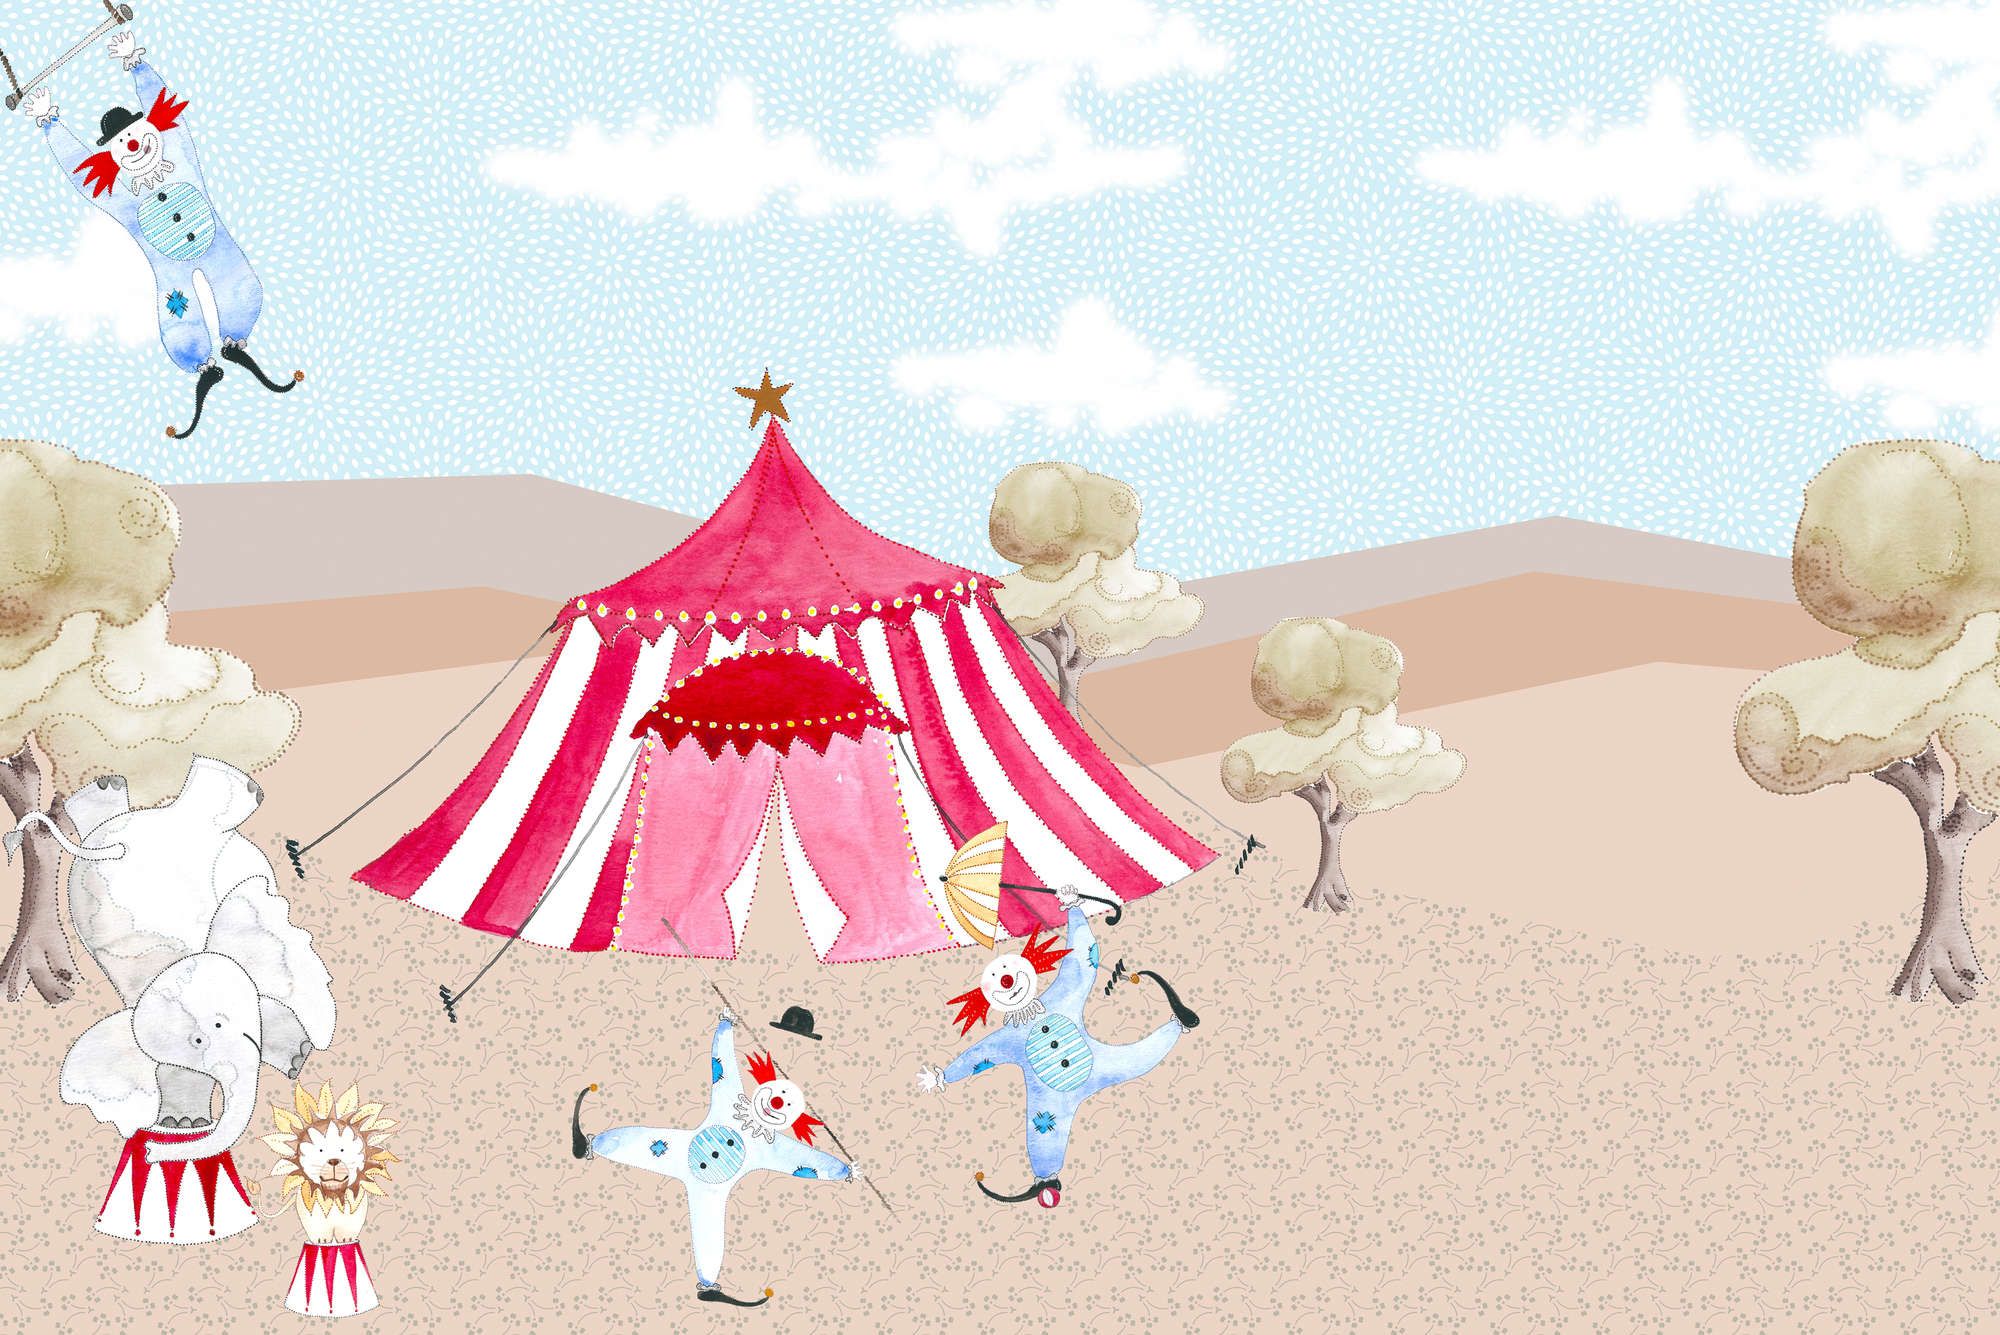             Papier peint panoramique enfants dessin chapiteau de cirque avec artistes sur intissé structuré
        